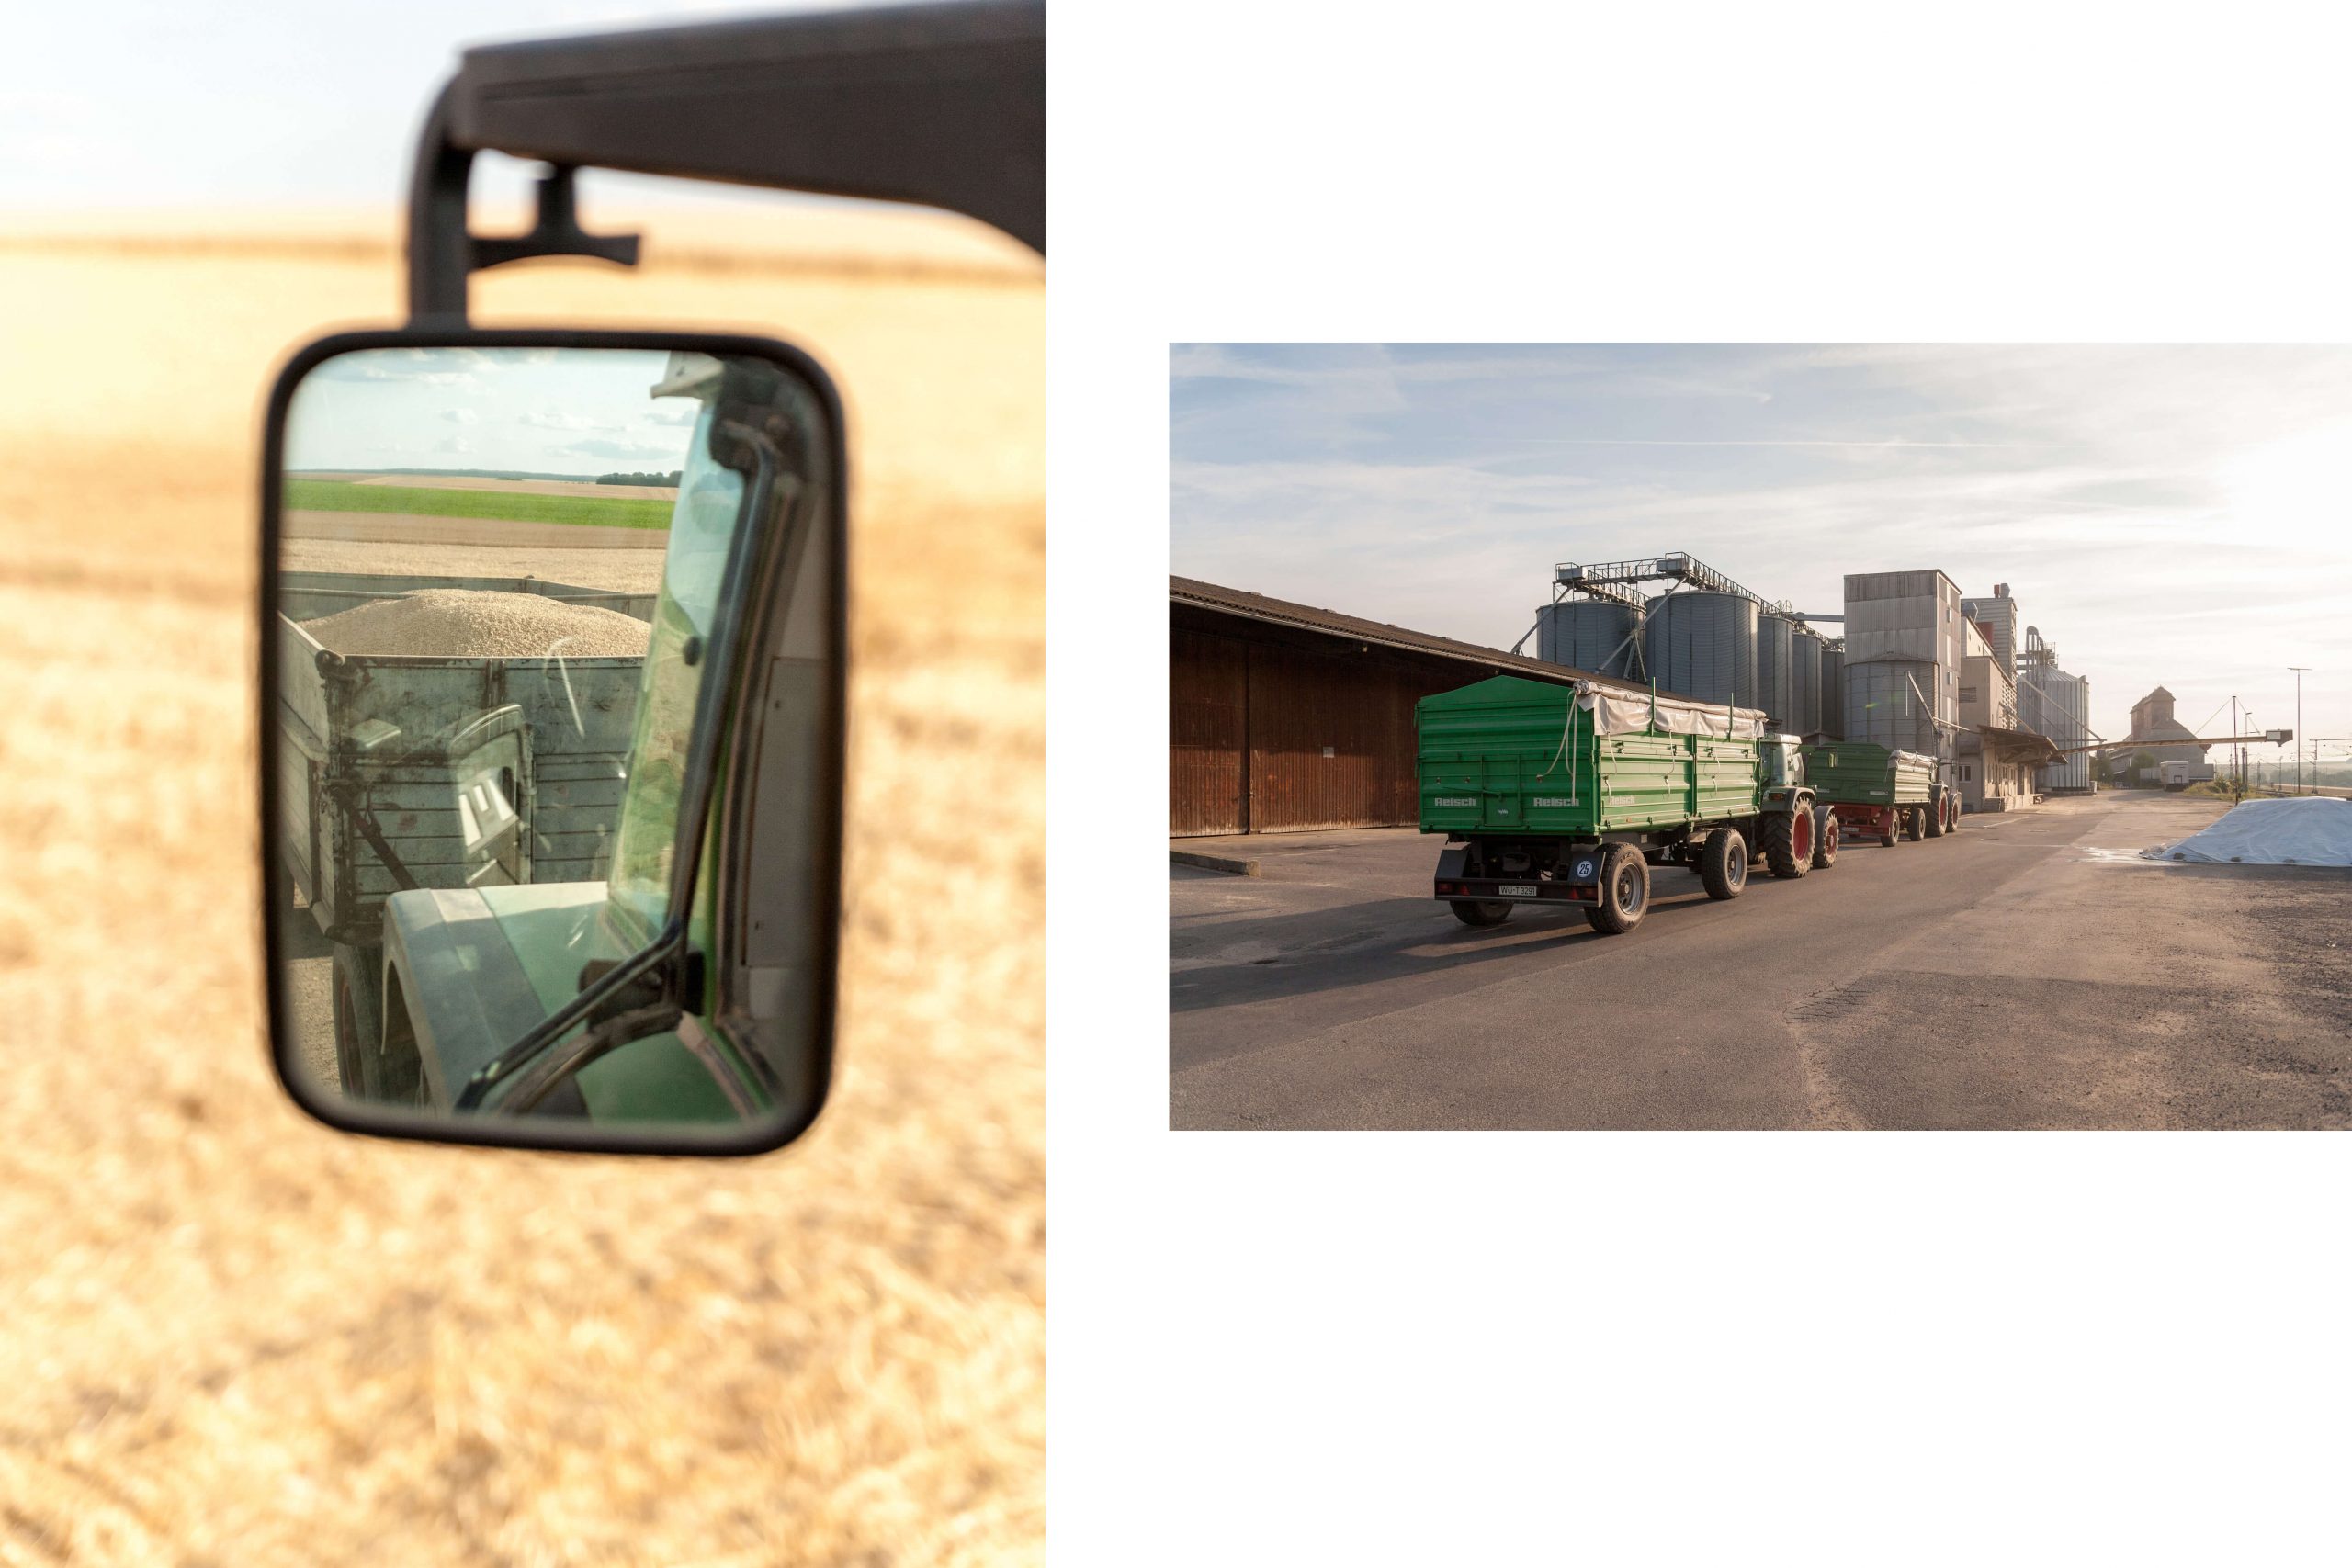 Blick auf die Ernte im Rückspiegel. Die Traktoren stehen zum Verkauf der Ernte an.